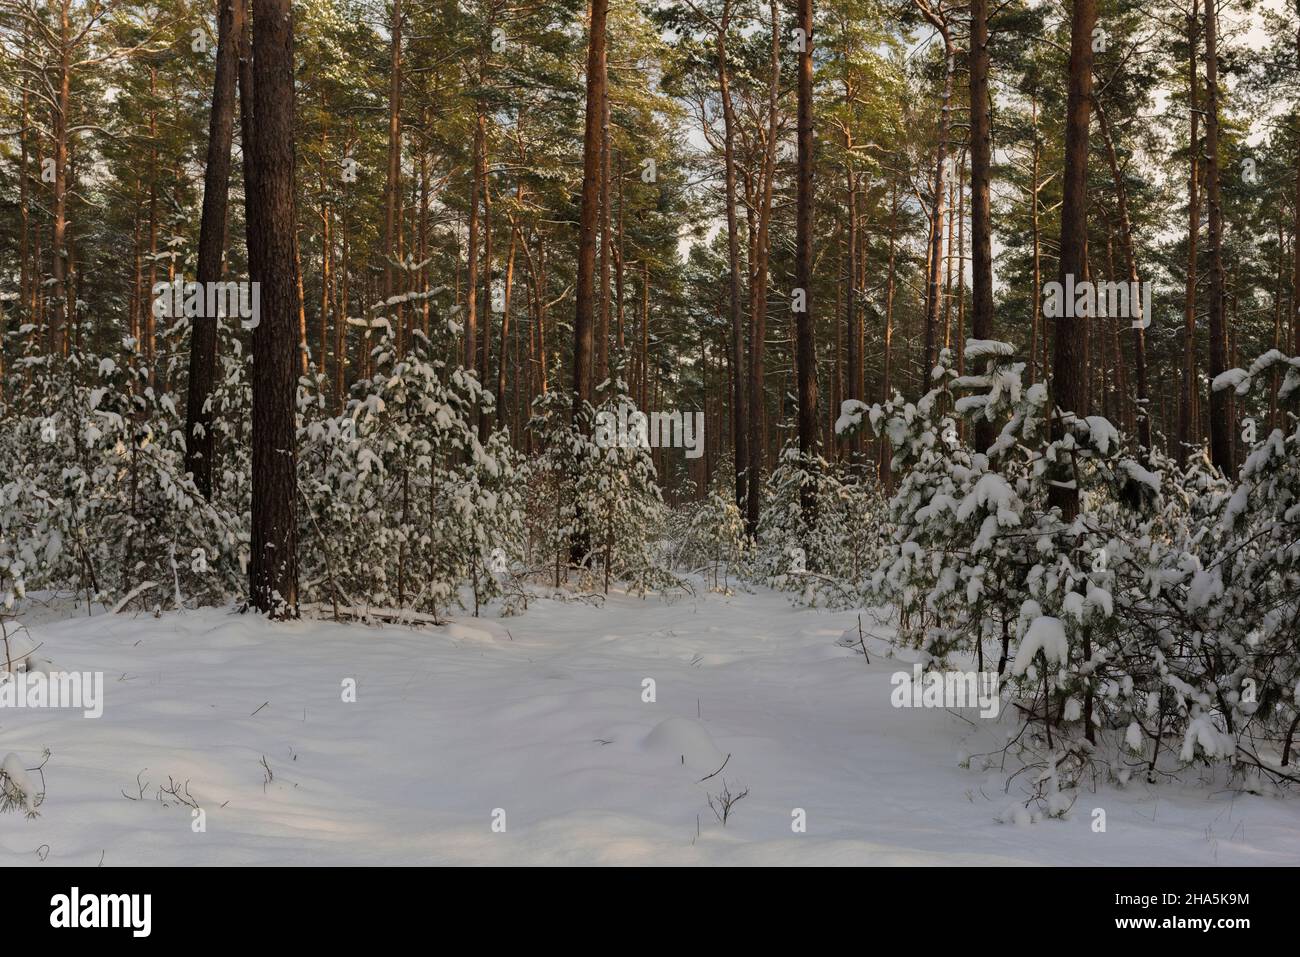 forêt de pins enneigés en hiver, plancher forestier et arbres couverts de neige, jeunes pins sous les vieux arbres Banque D'Images